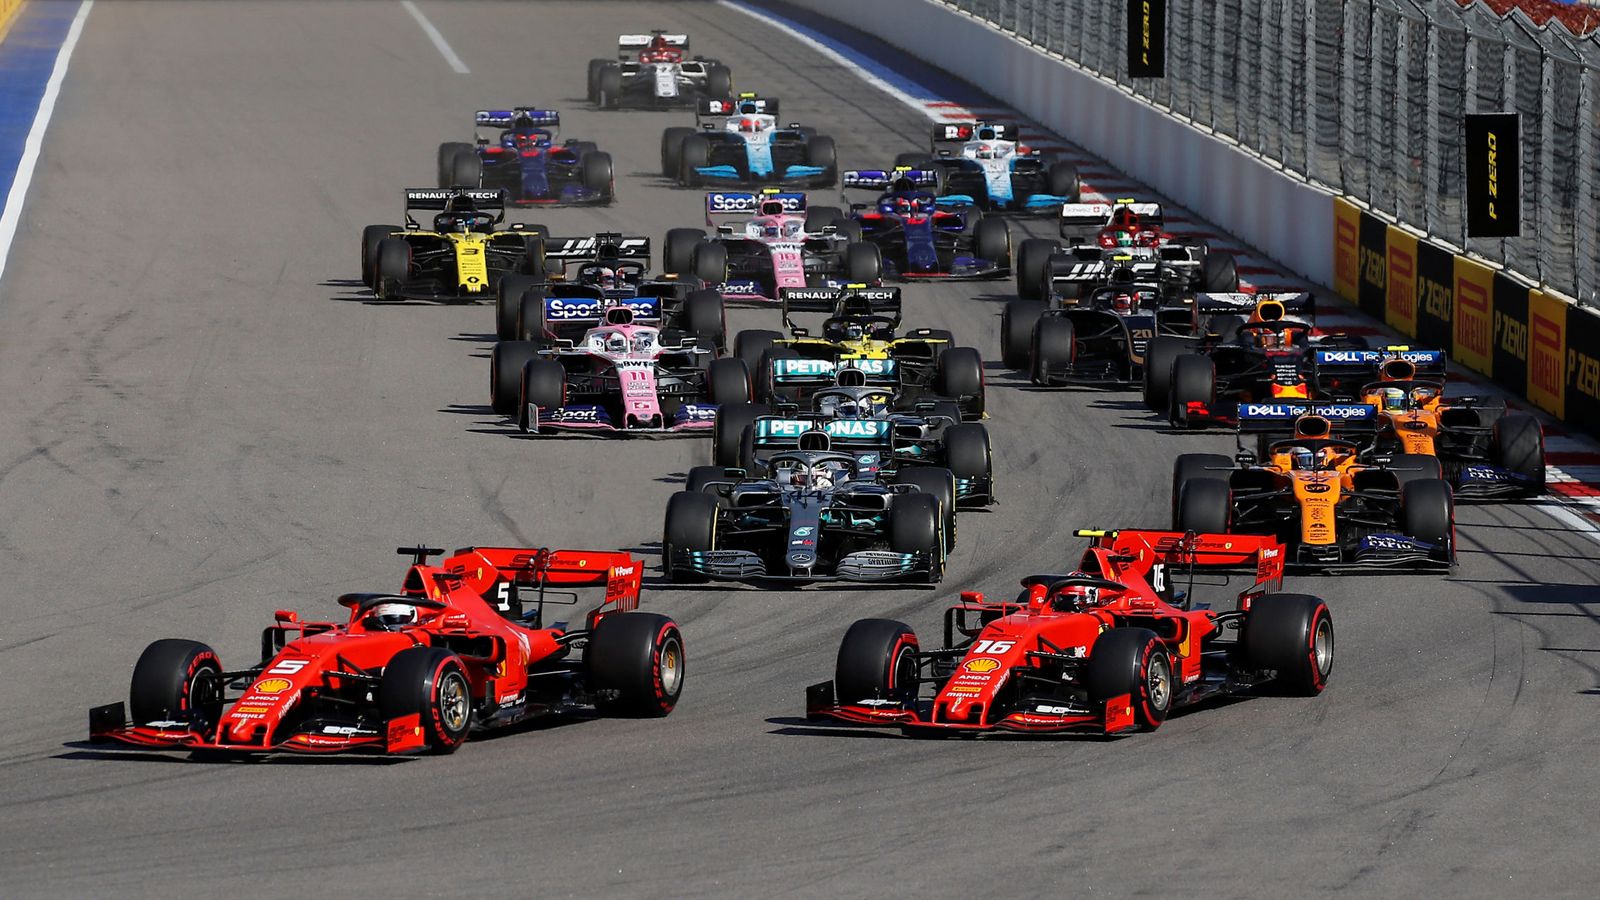 Foto: La Fórmula 1 implantará un nuevo sistema de clasificación en 2020. (Reuters)